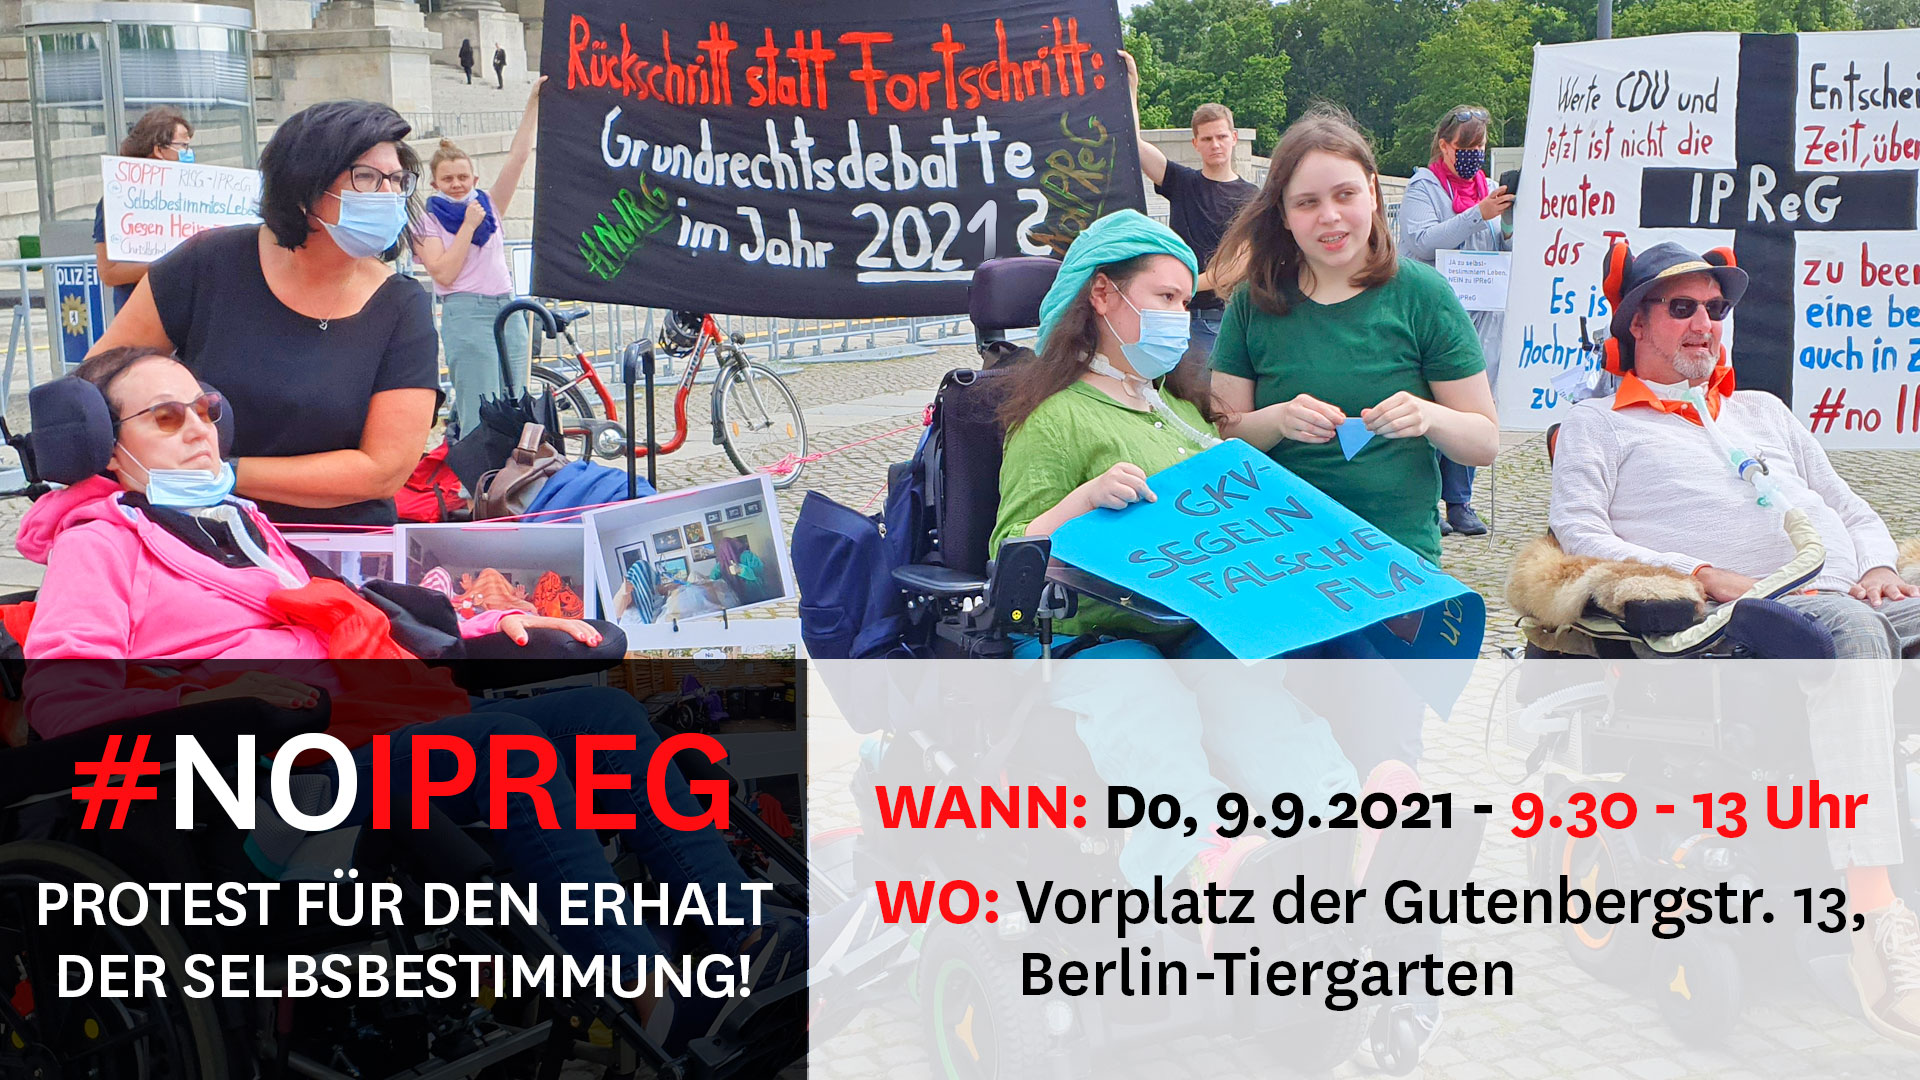 Protest-als-mobil-09-2021